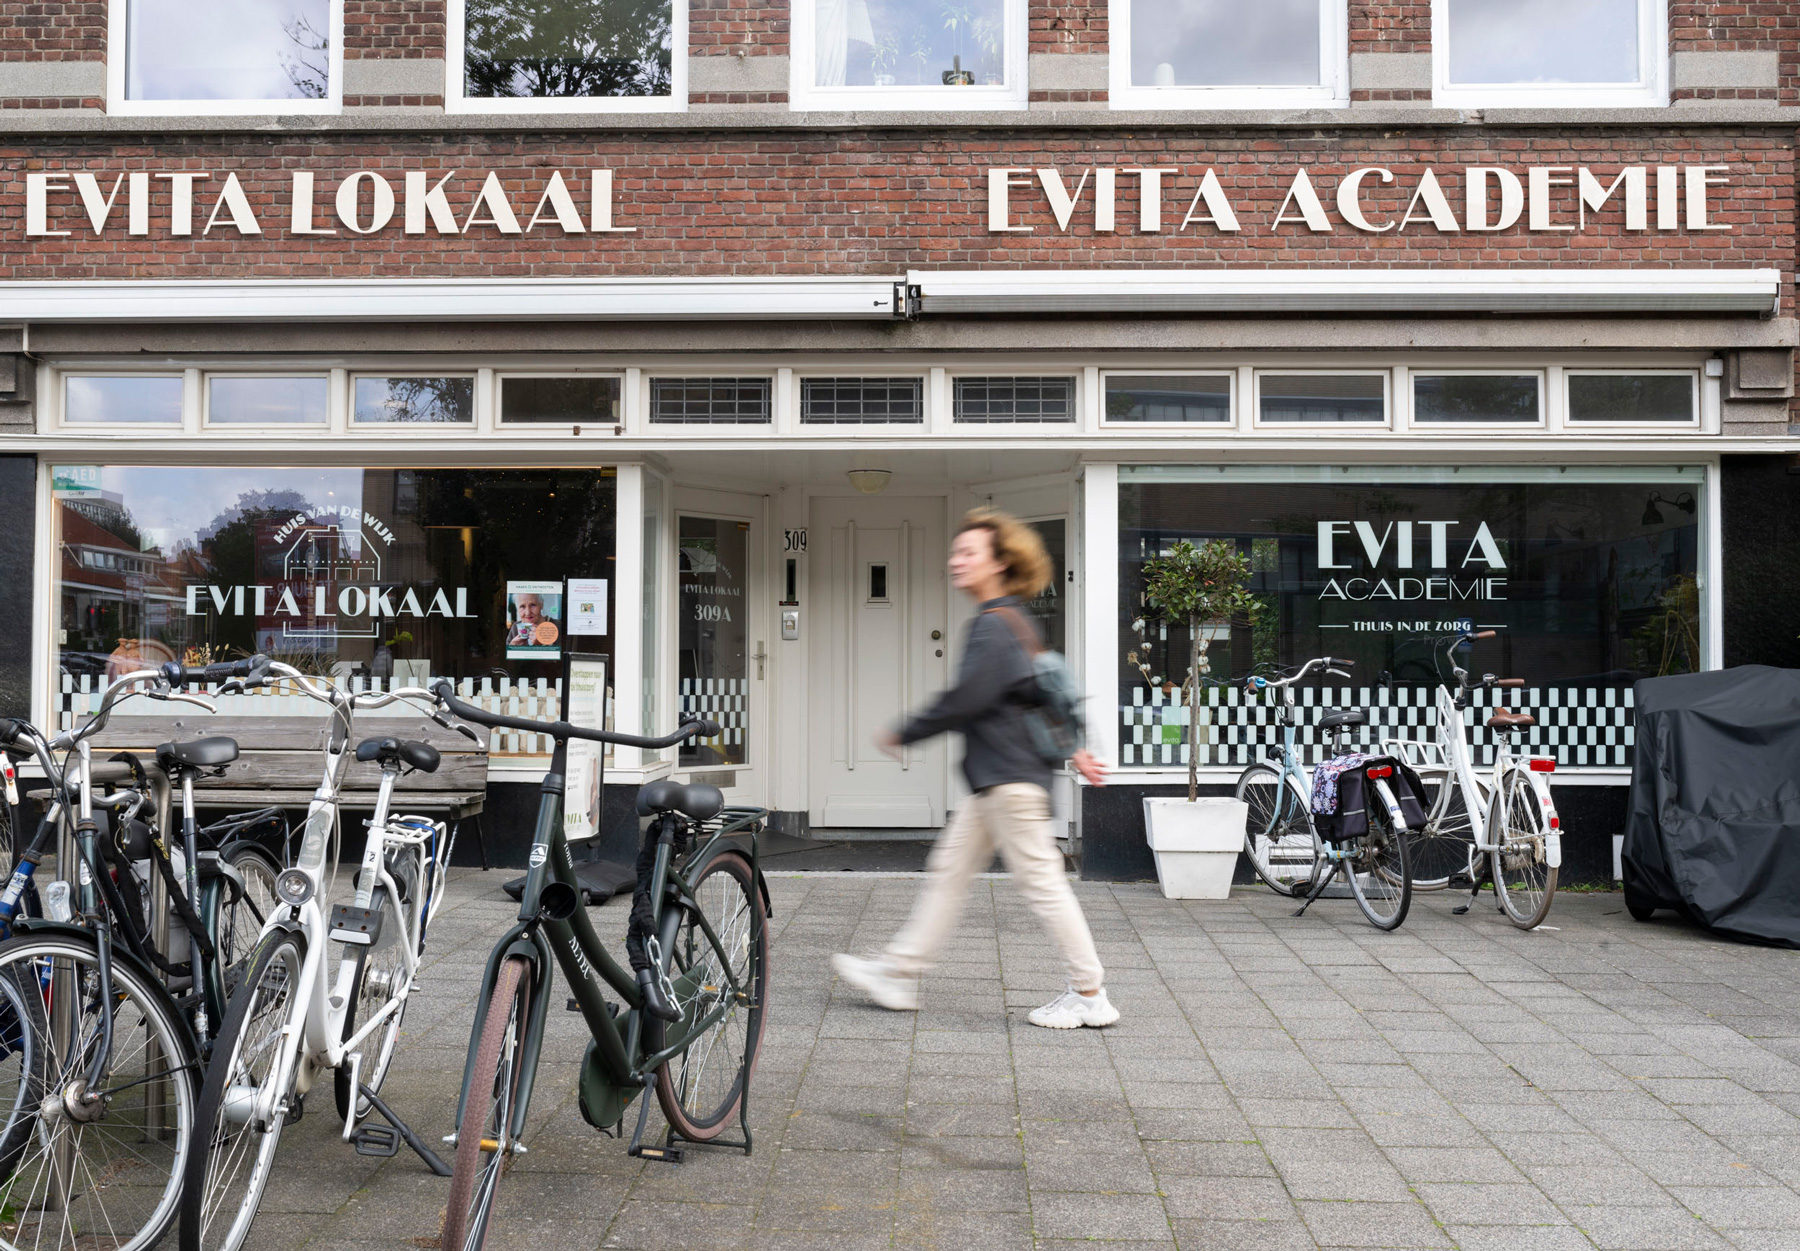 Een afbeelding van de gevel van Evita lokaal en academie